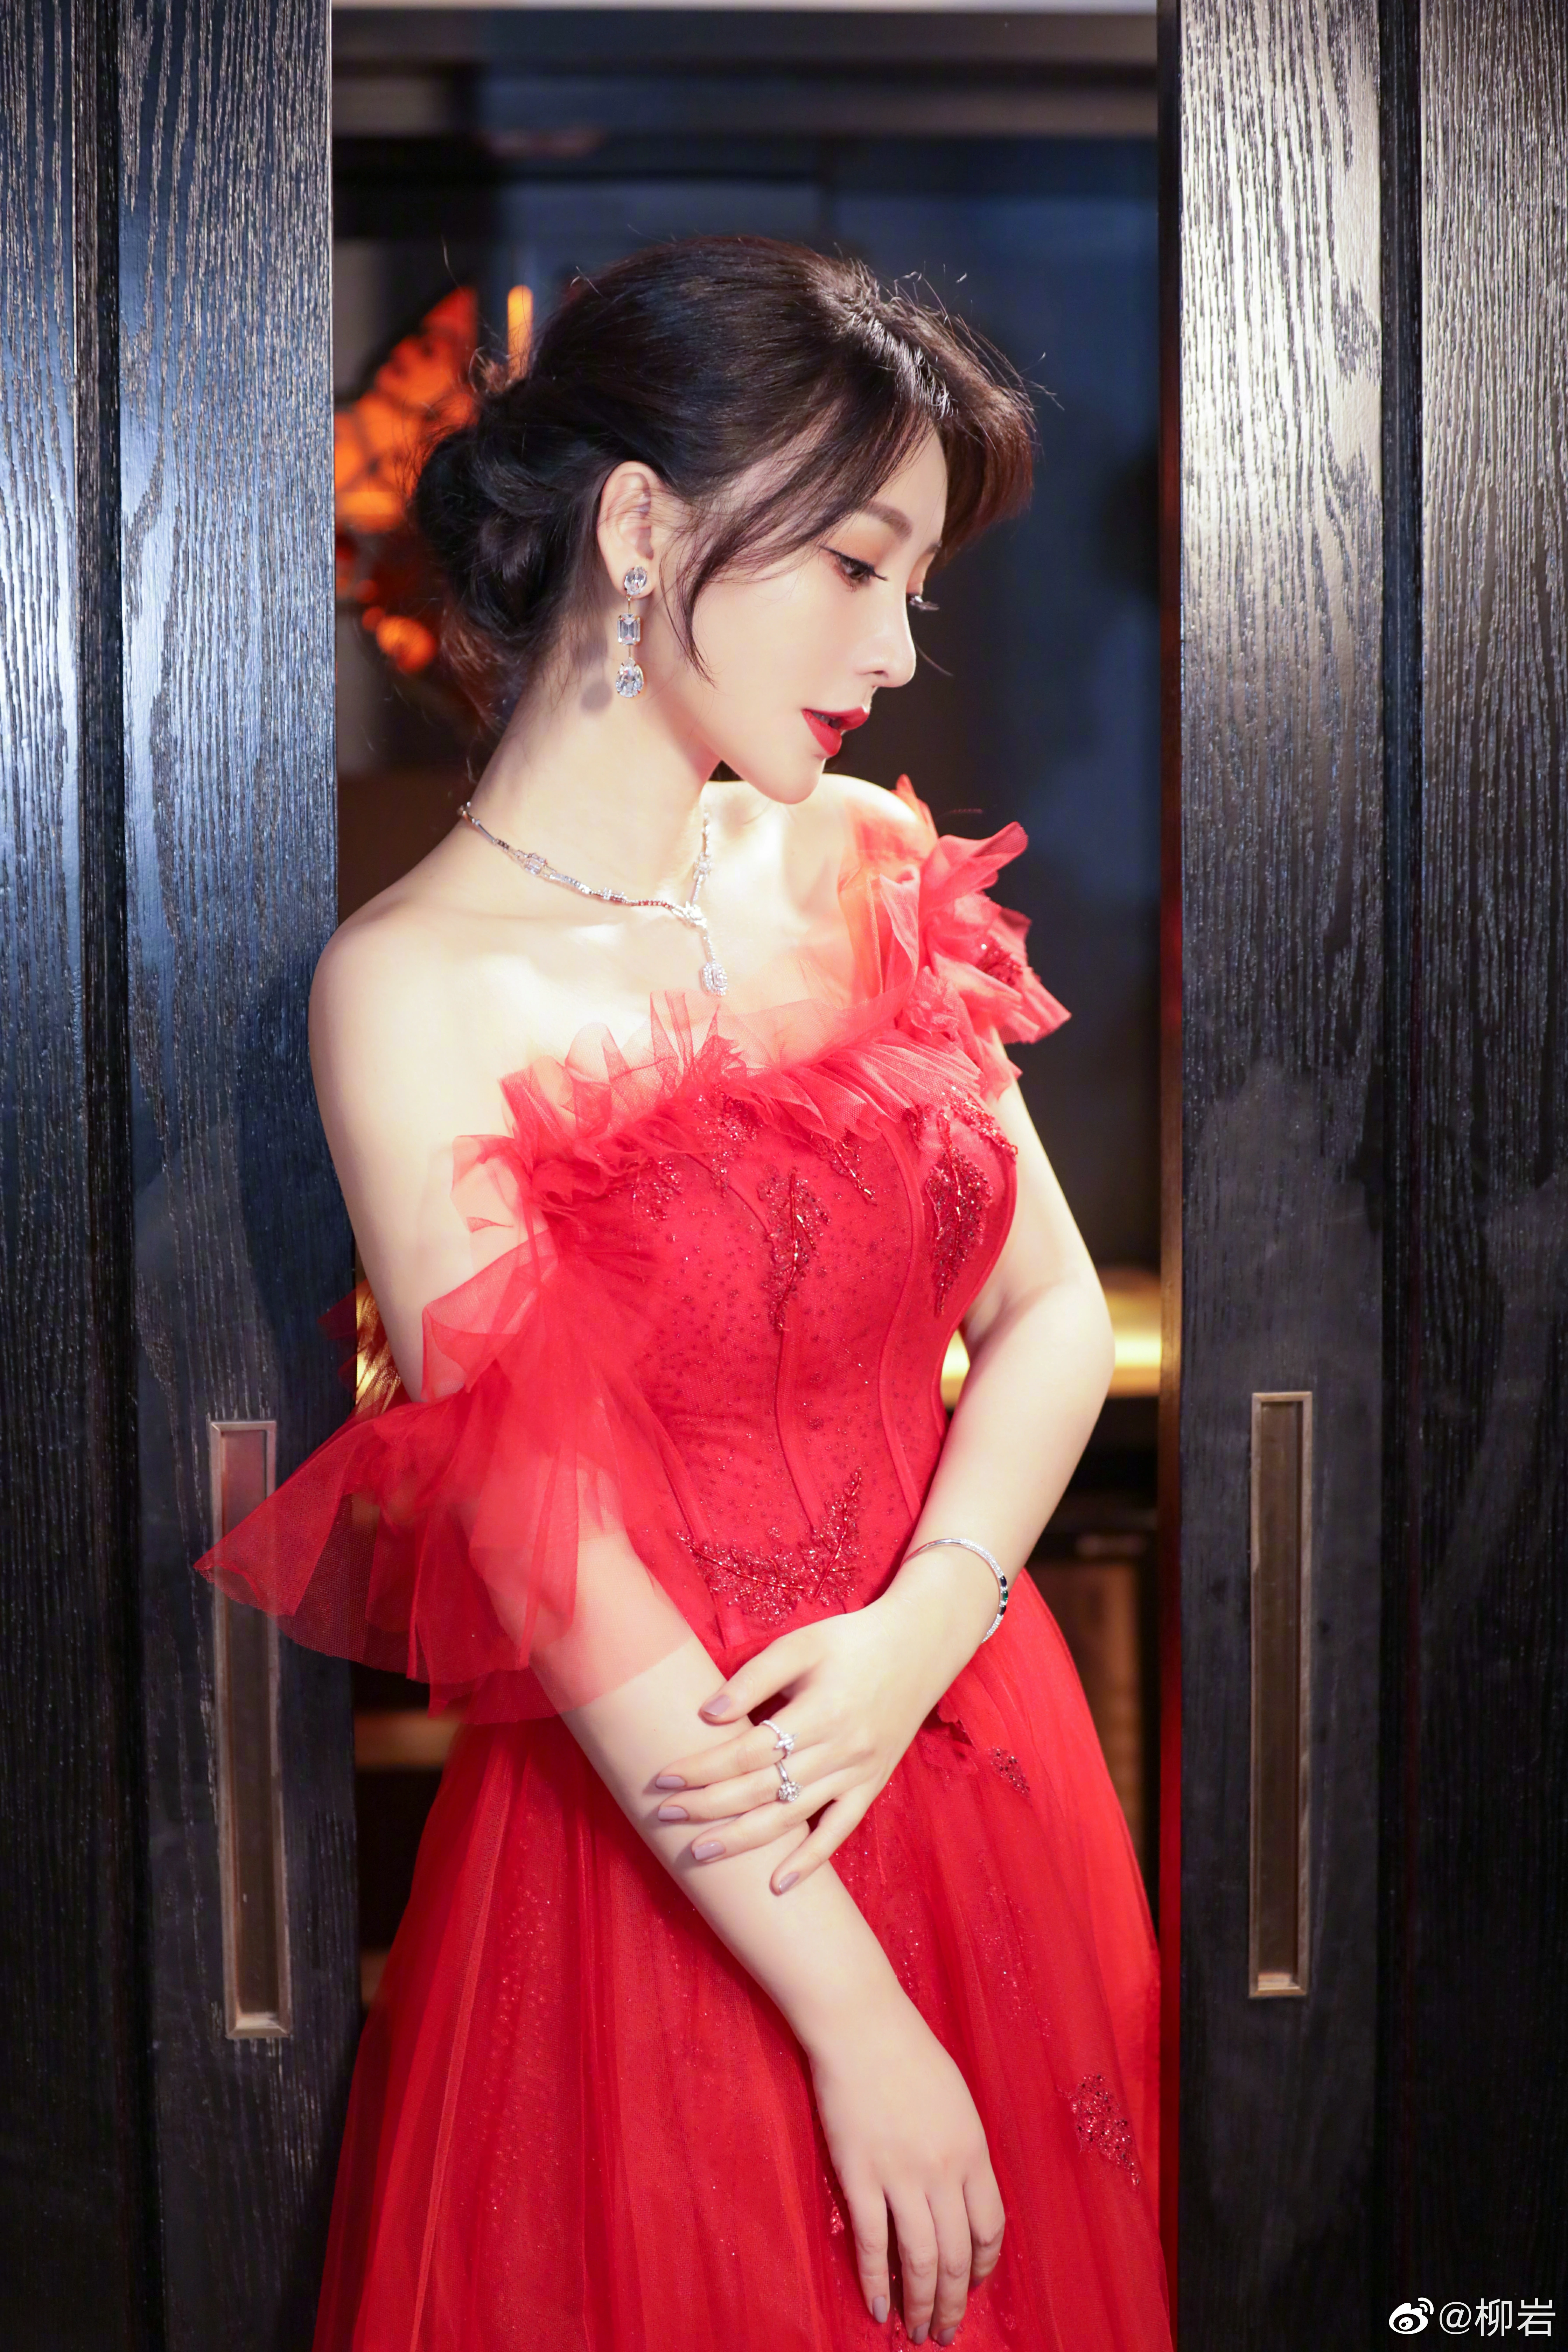 柳岩一袭红色纱裙出席活动 露美背香肩气质优雅迷人,